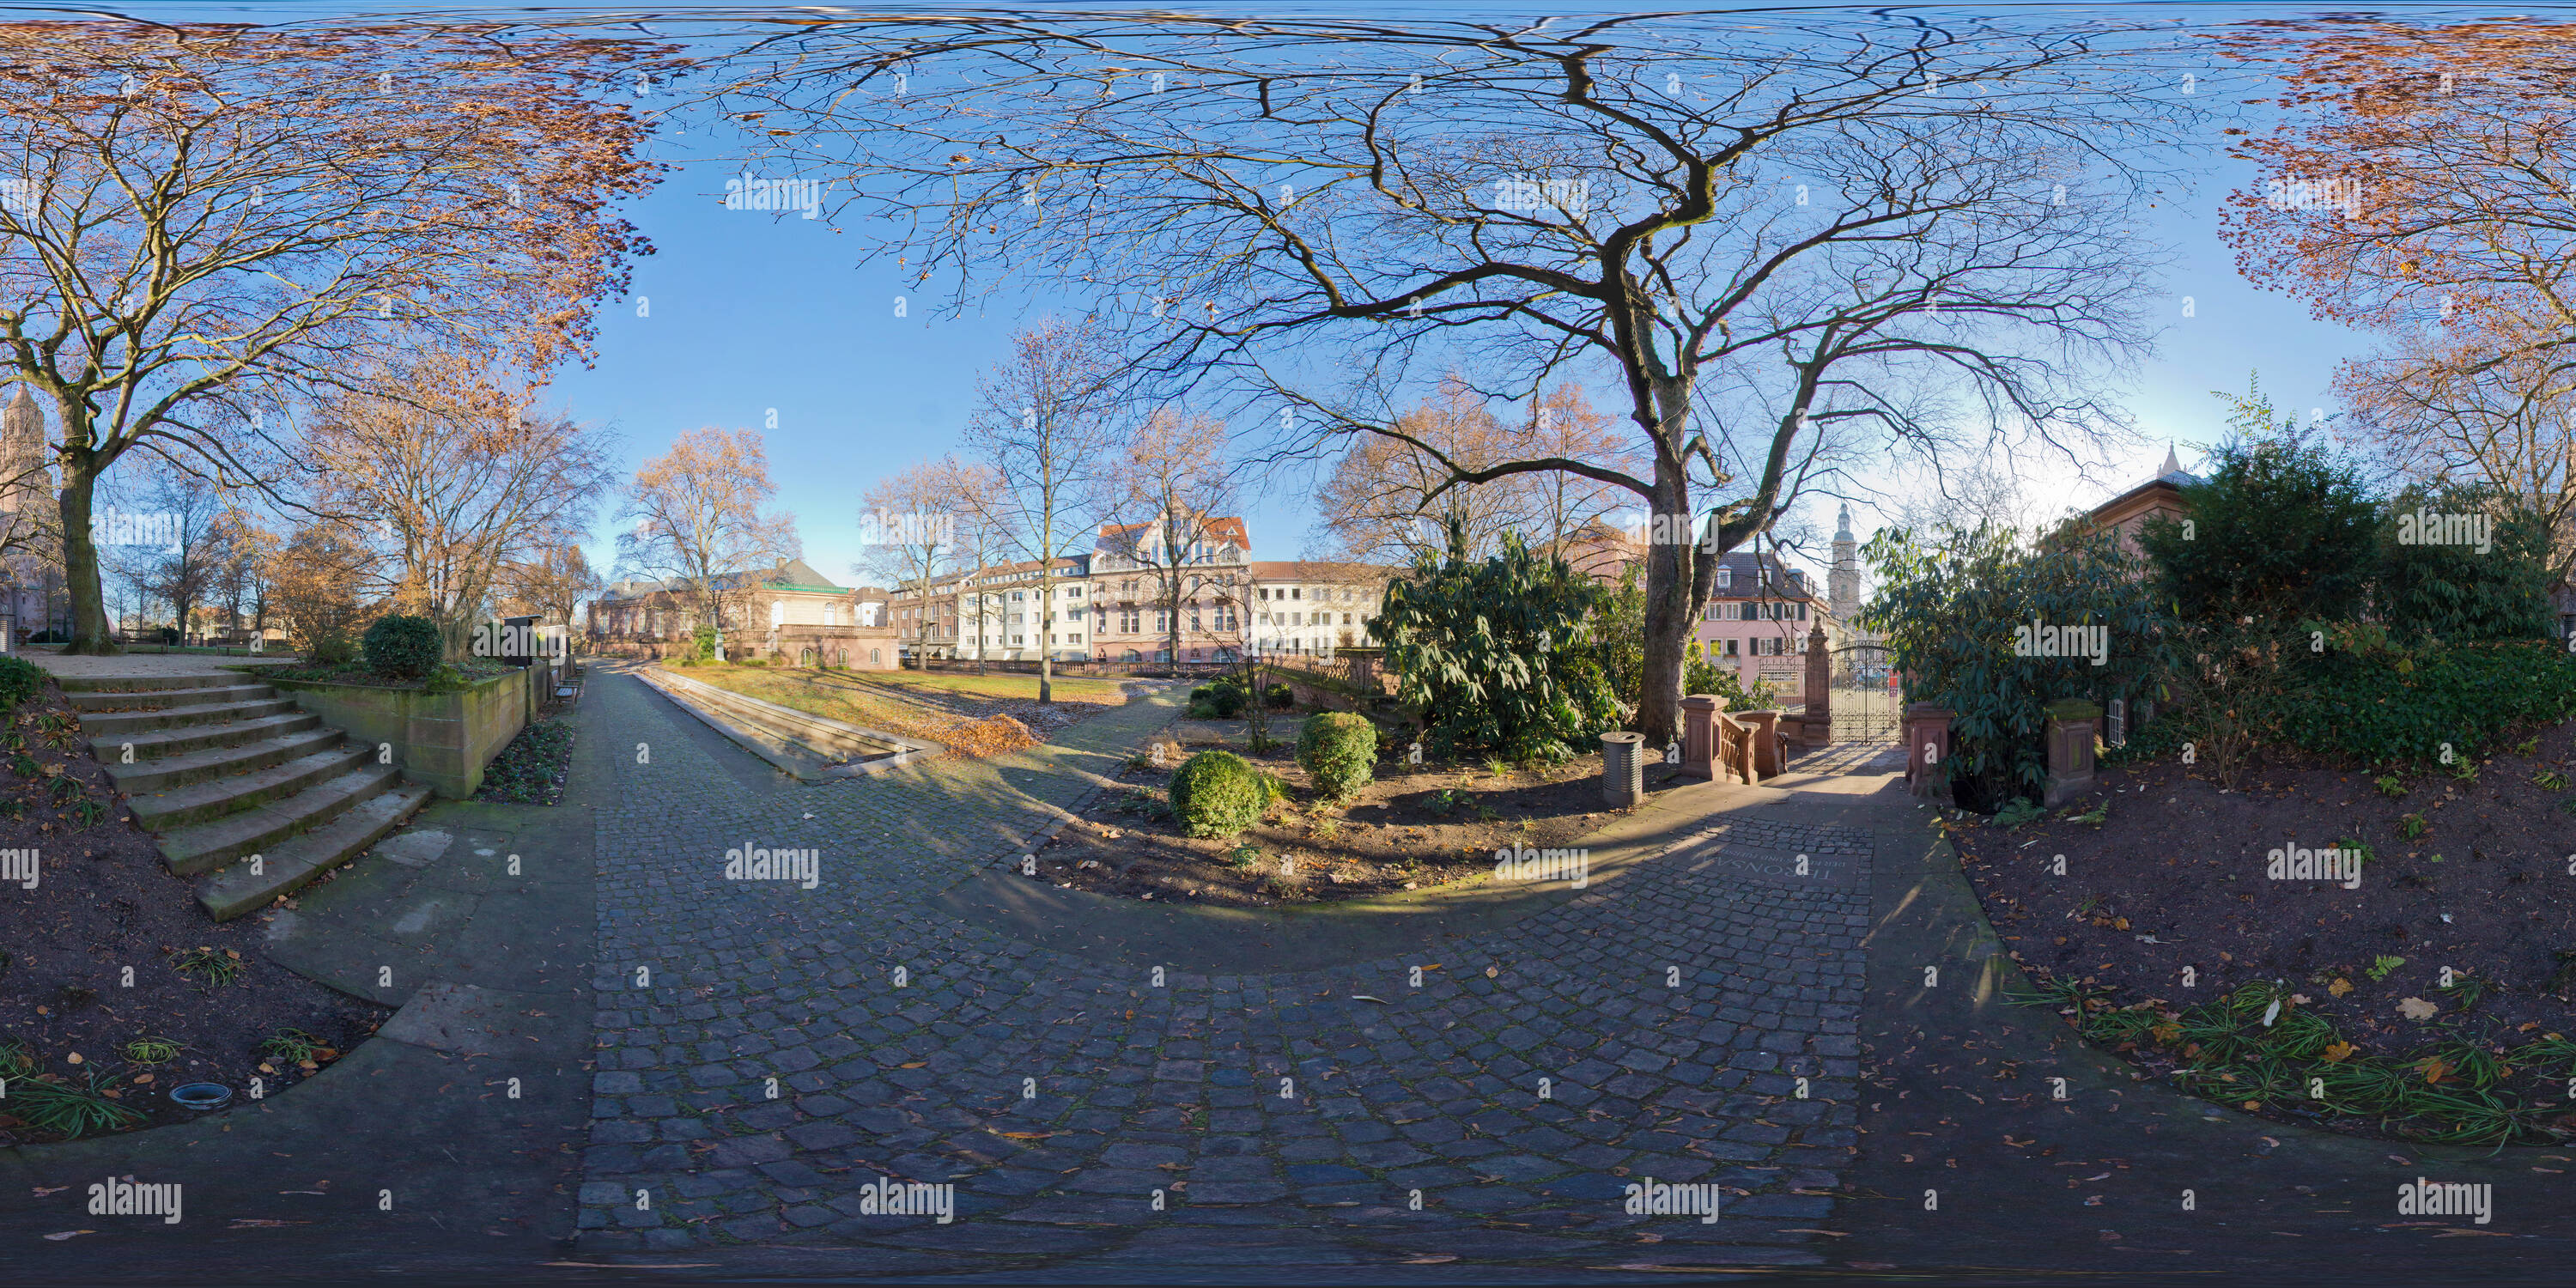 360 degree panoramic view of Heylshof Garden, Worms, 2016-12, freehand